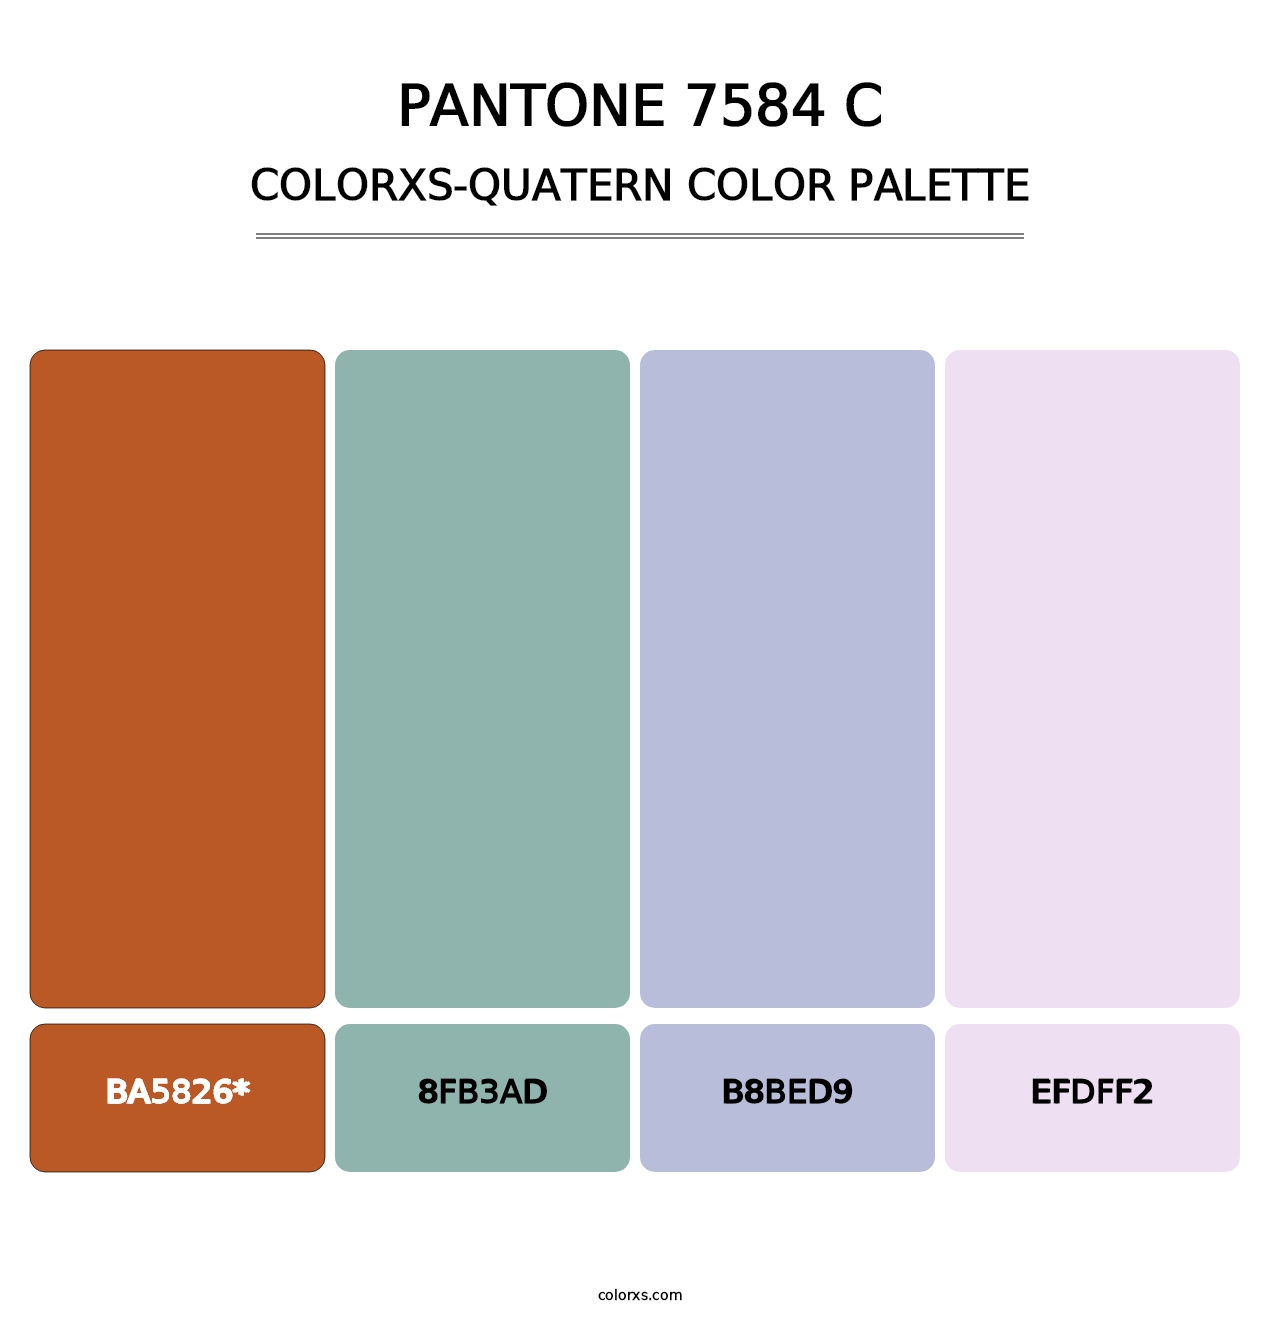 PANTONE 7584 C - Colorxs Quatern Palette